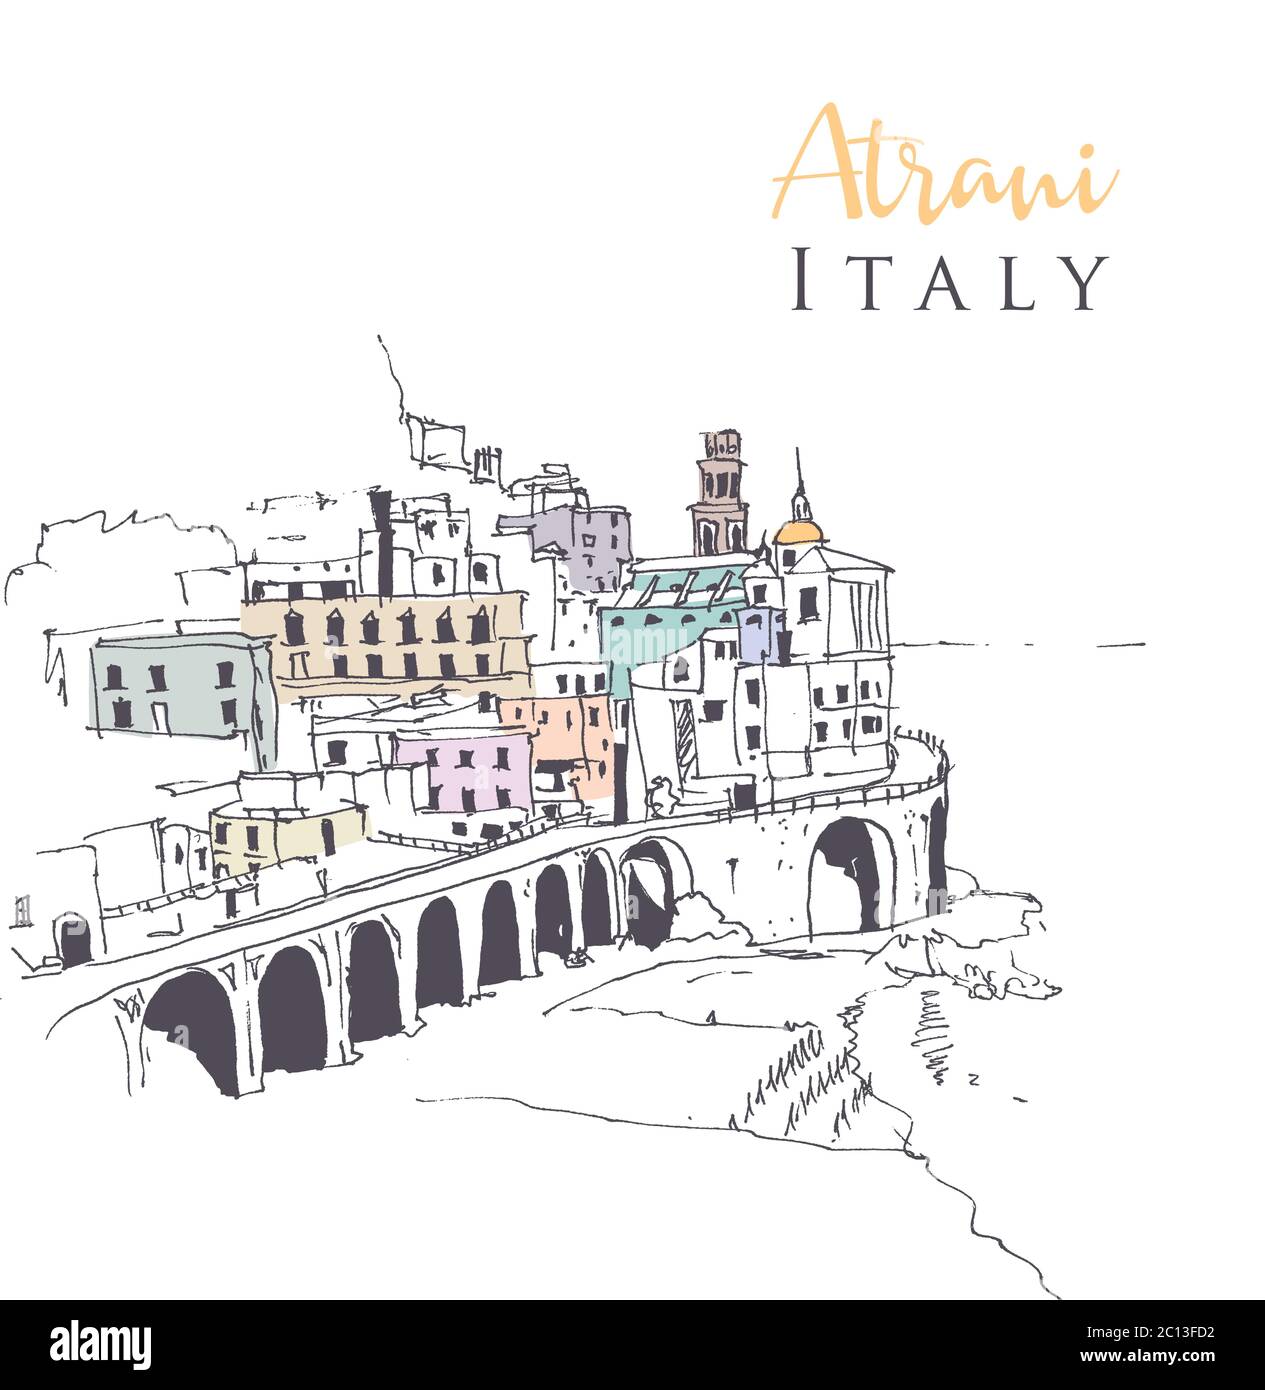 Dessin d'une illustration d'Atrani, le plus petit village du sud-ouest de l'Italie. Illustration de Vecteur